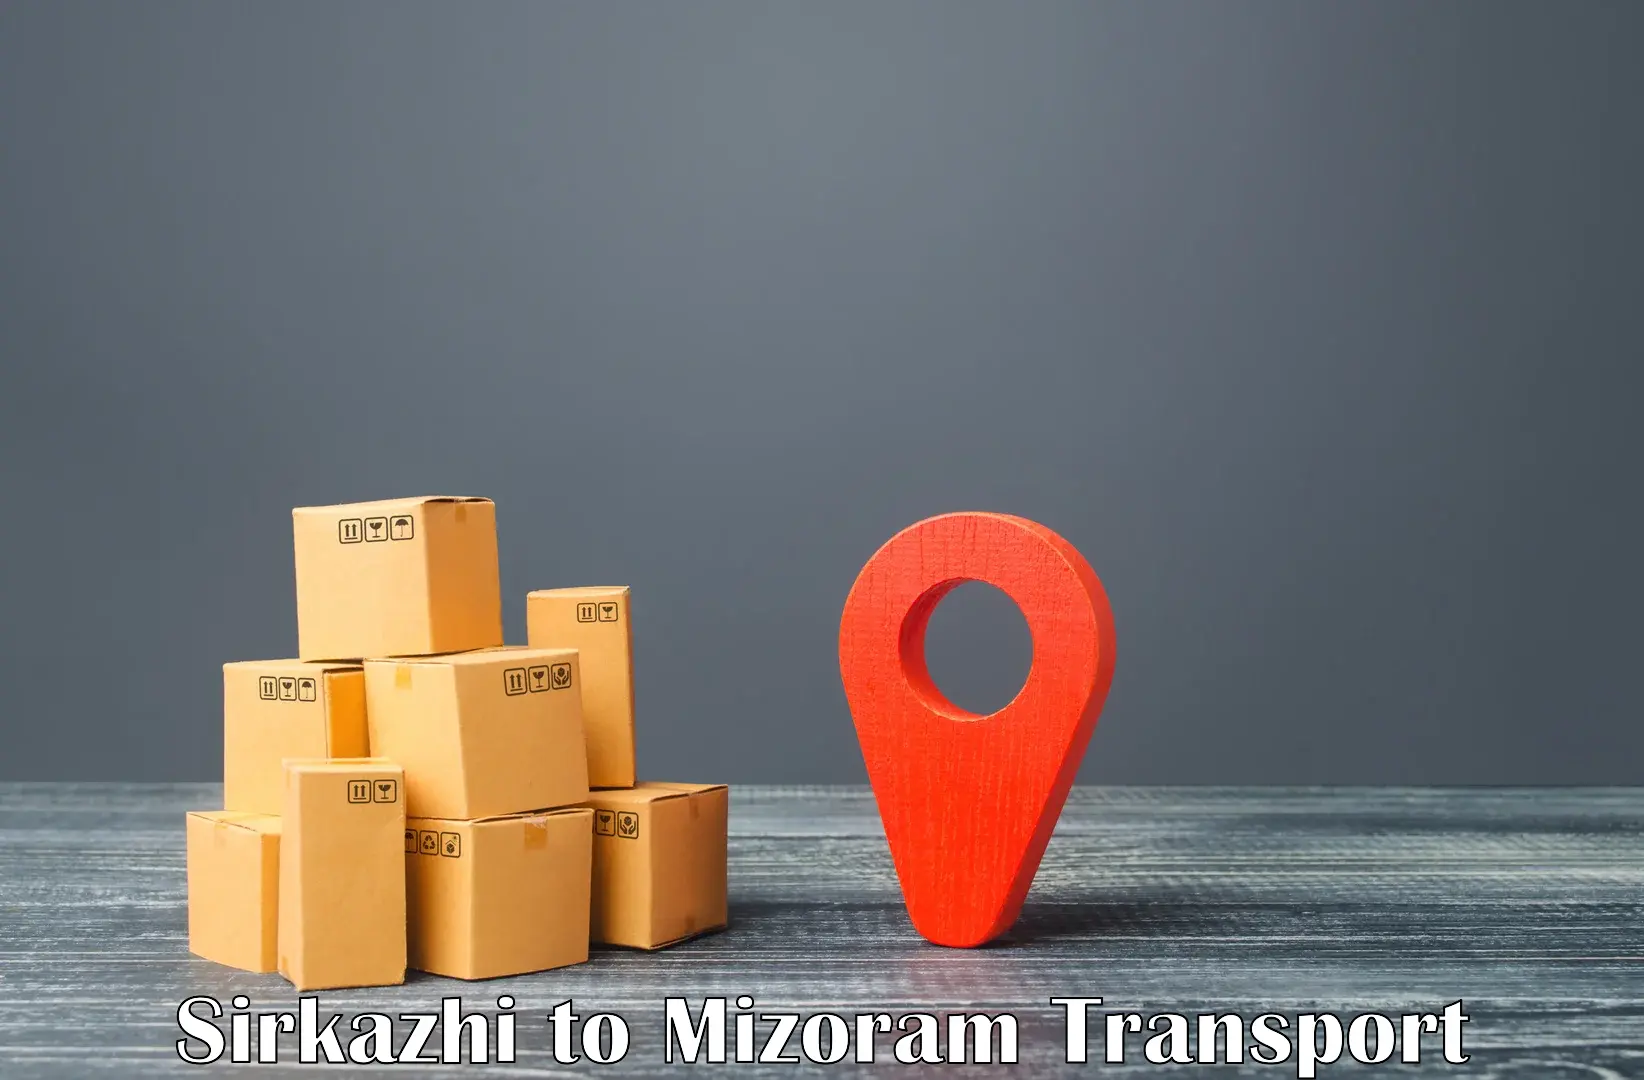 Container transport service Sirkazhi to Khawzawl